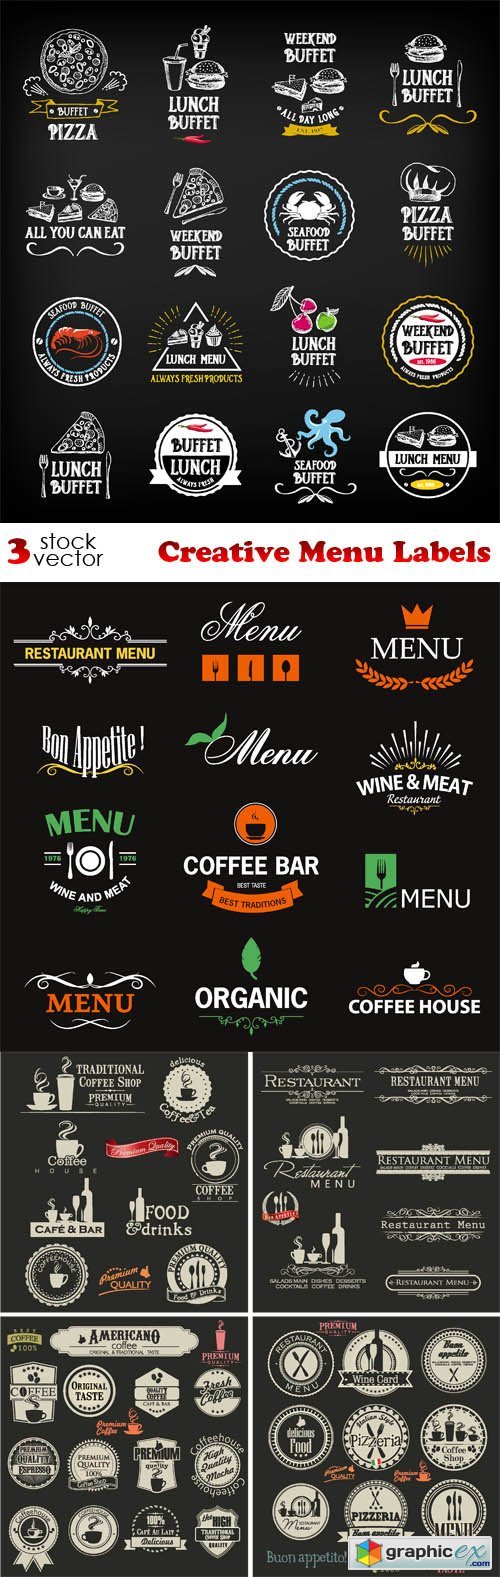 Vectors - Creative Menu Labels